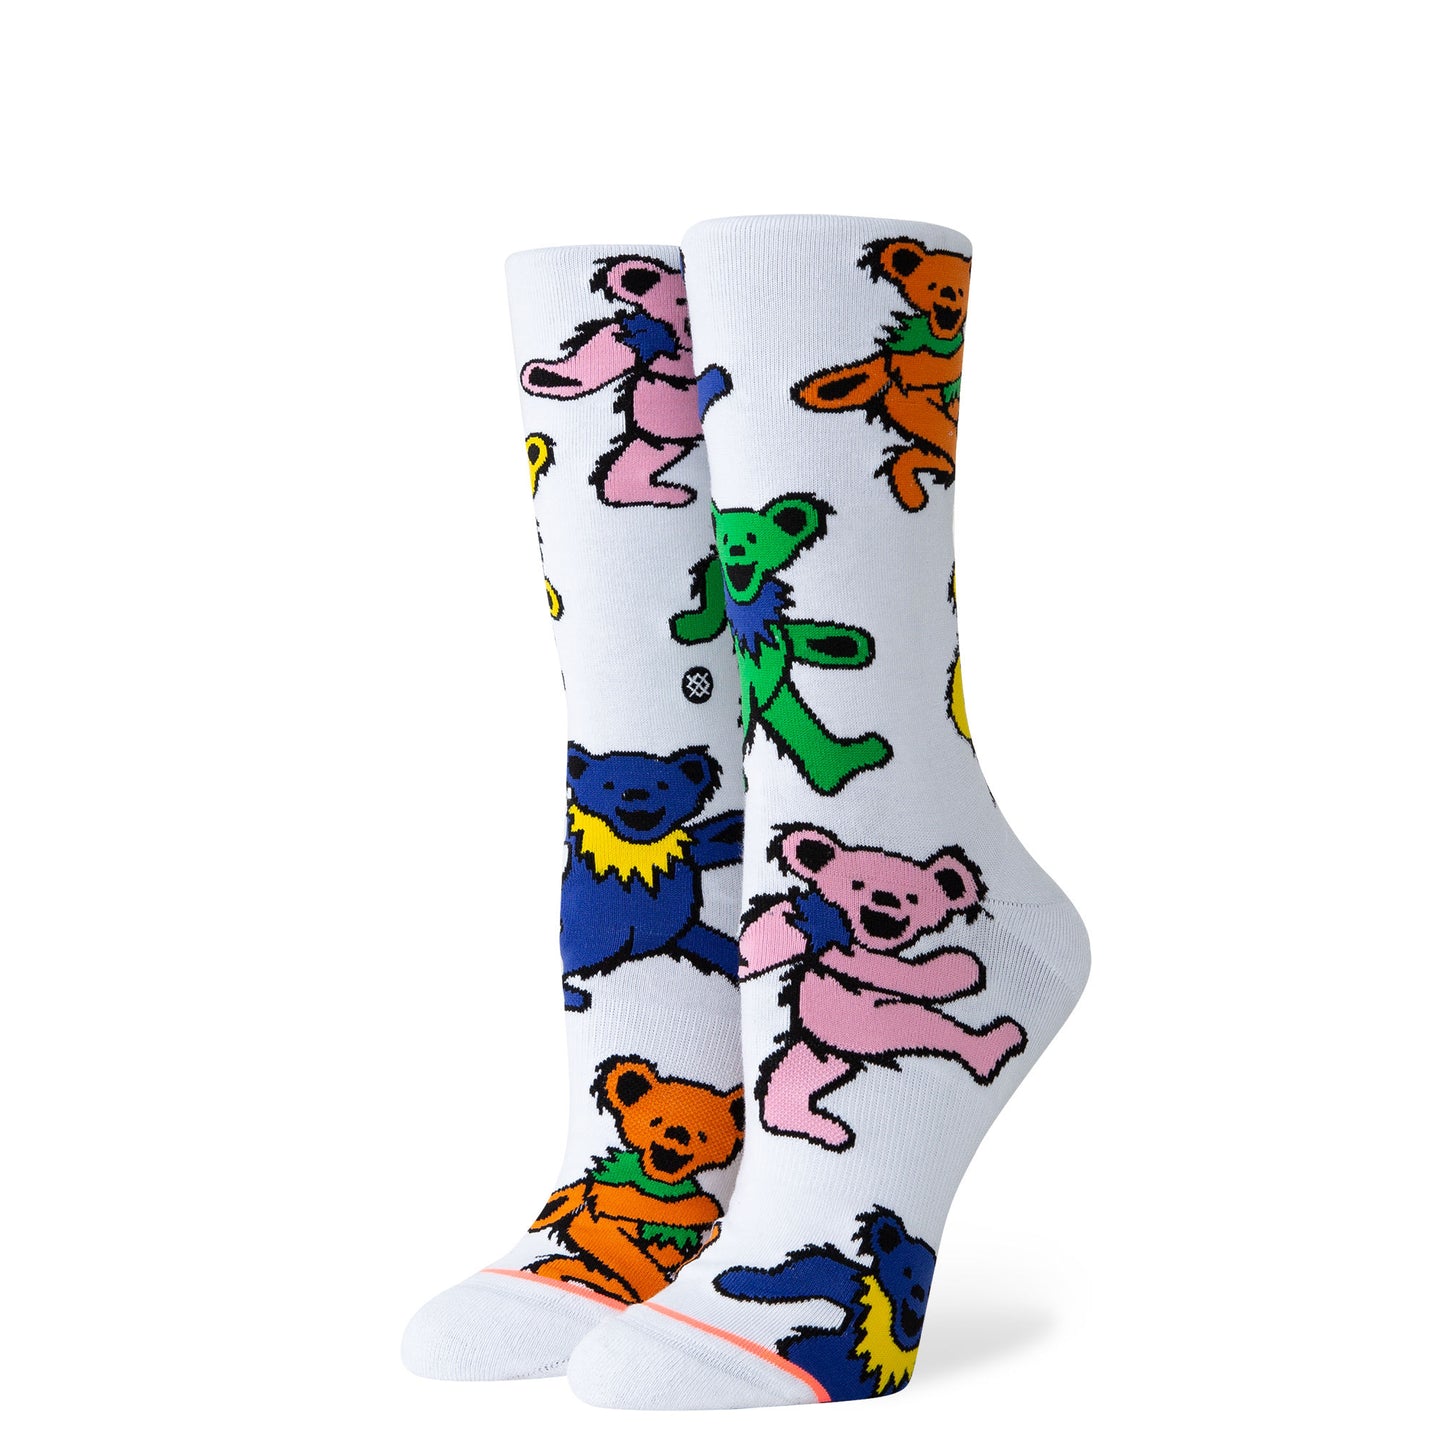 Stance x Grateful Dead - Bear's Choice Women's Socks, White